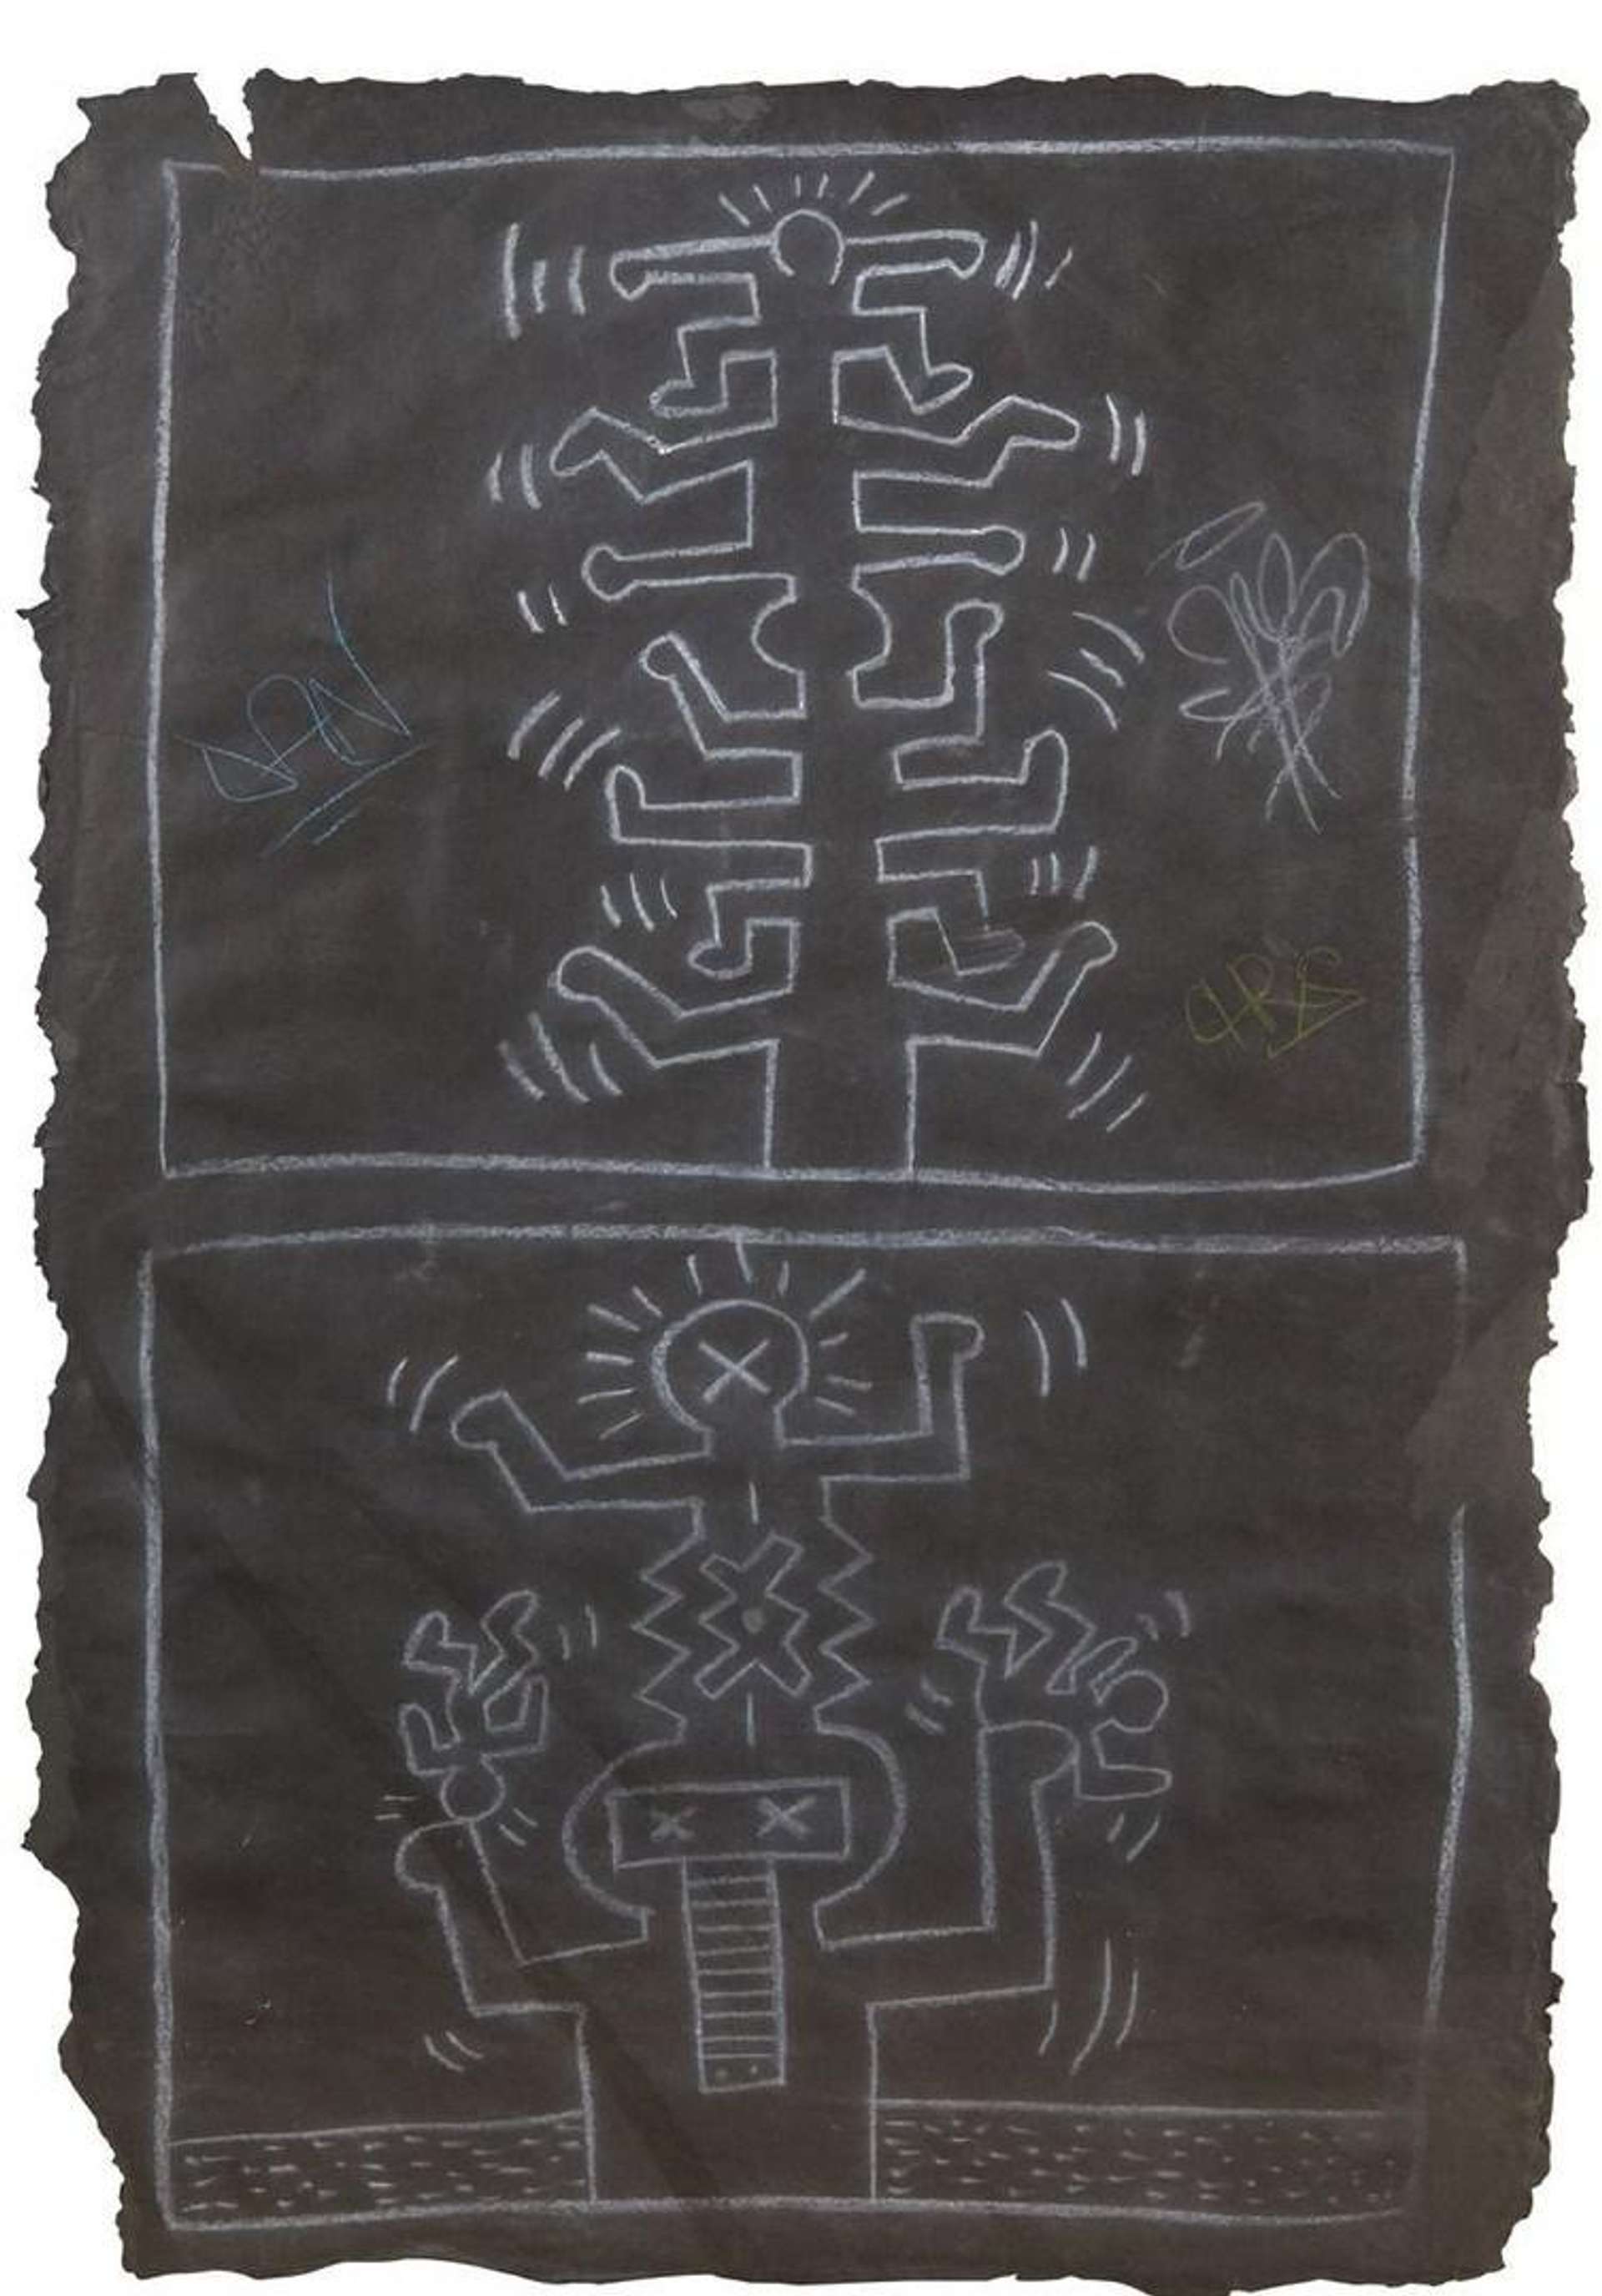 Subway Drawing 1 by Keith Haring - MyArtBroker